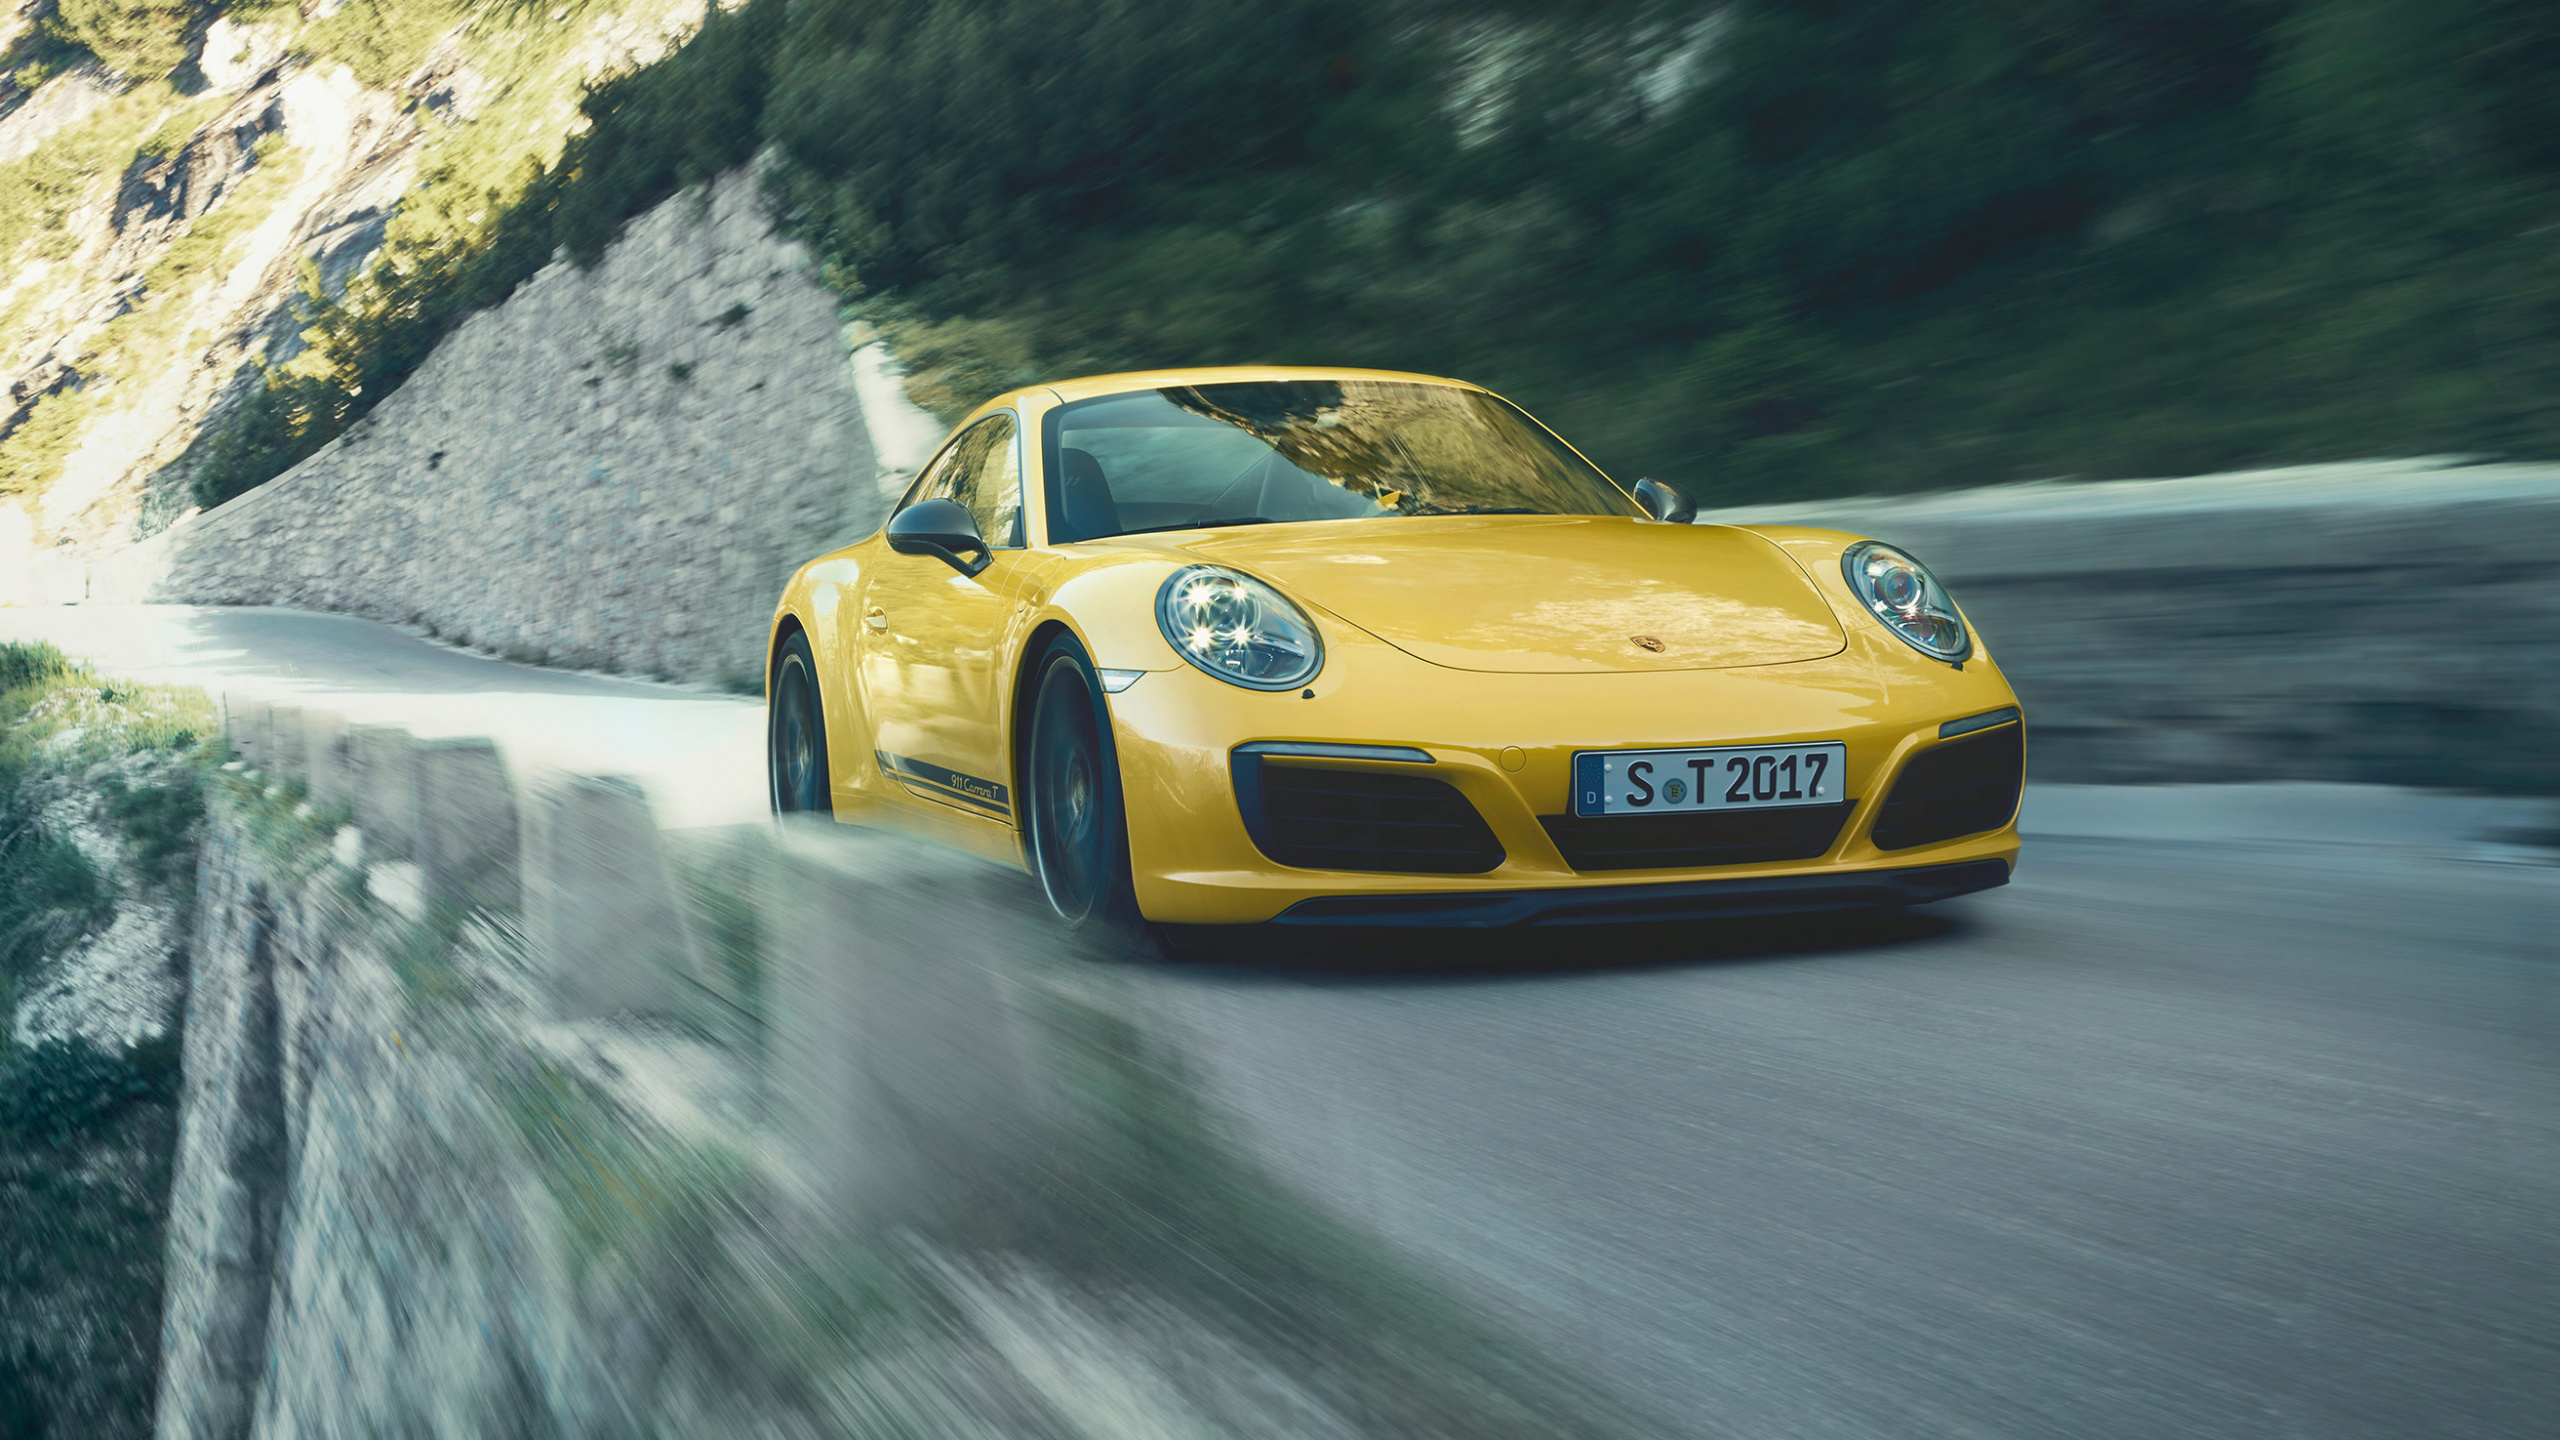 Porsche 911 Amarillo en la Carretera Durante el Día. Wallpaper in 2560x1440 Resolution